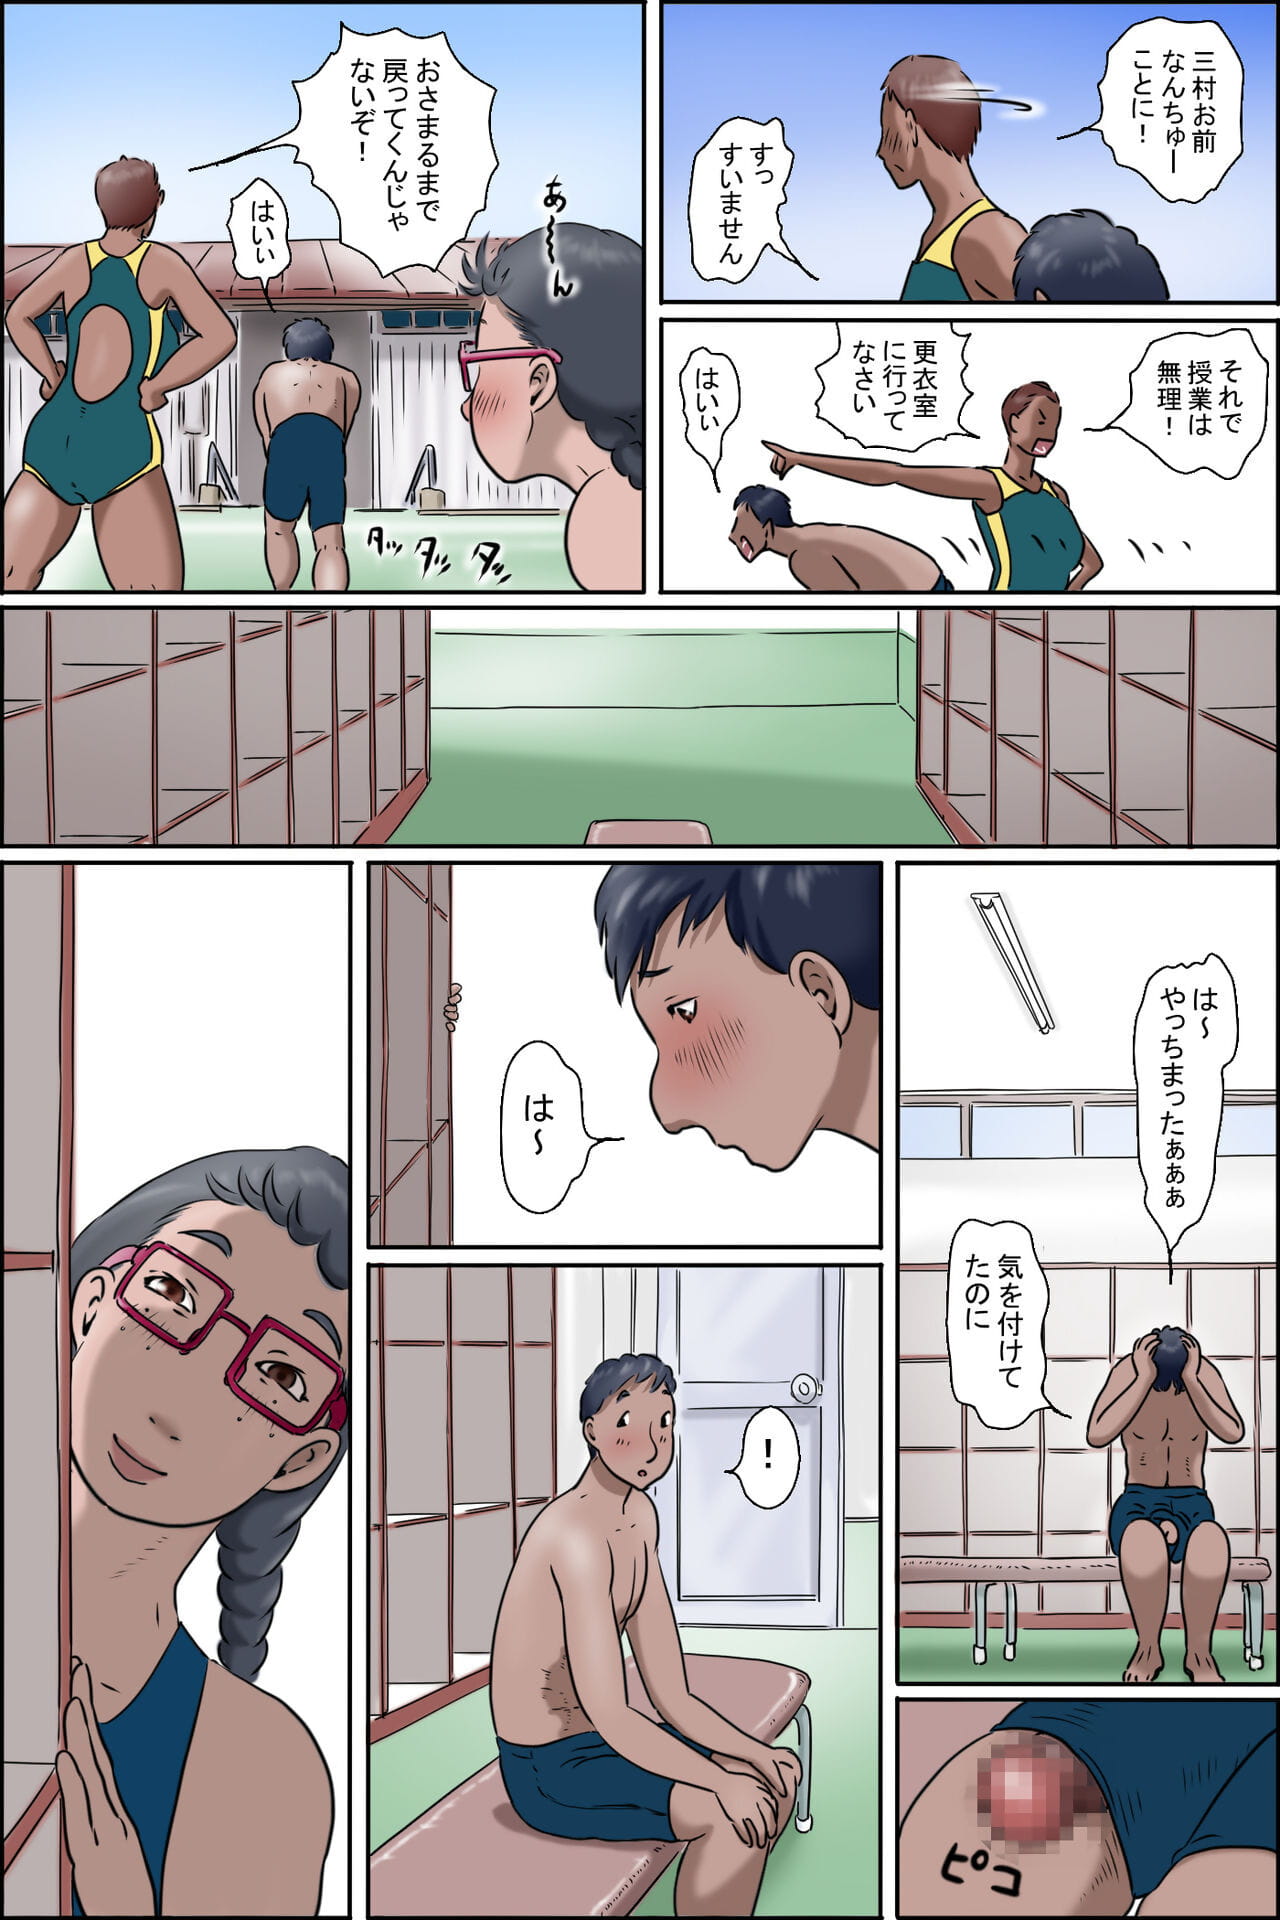 죄송 ni wa makerarenai razoku 카 choujo 암탉 page 1